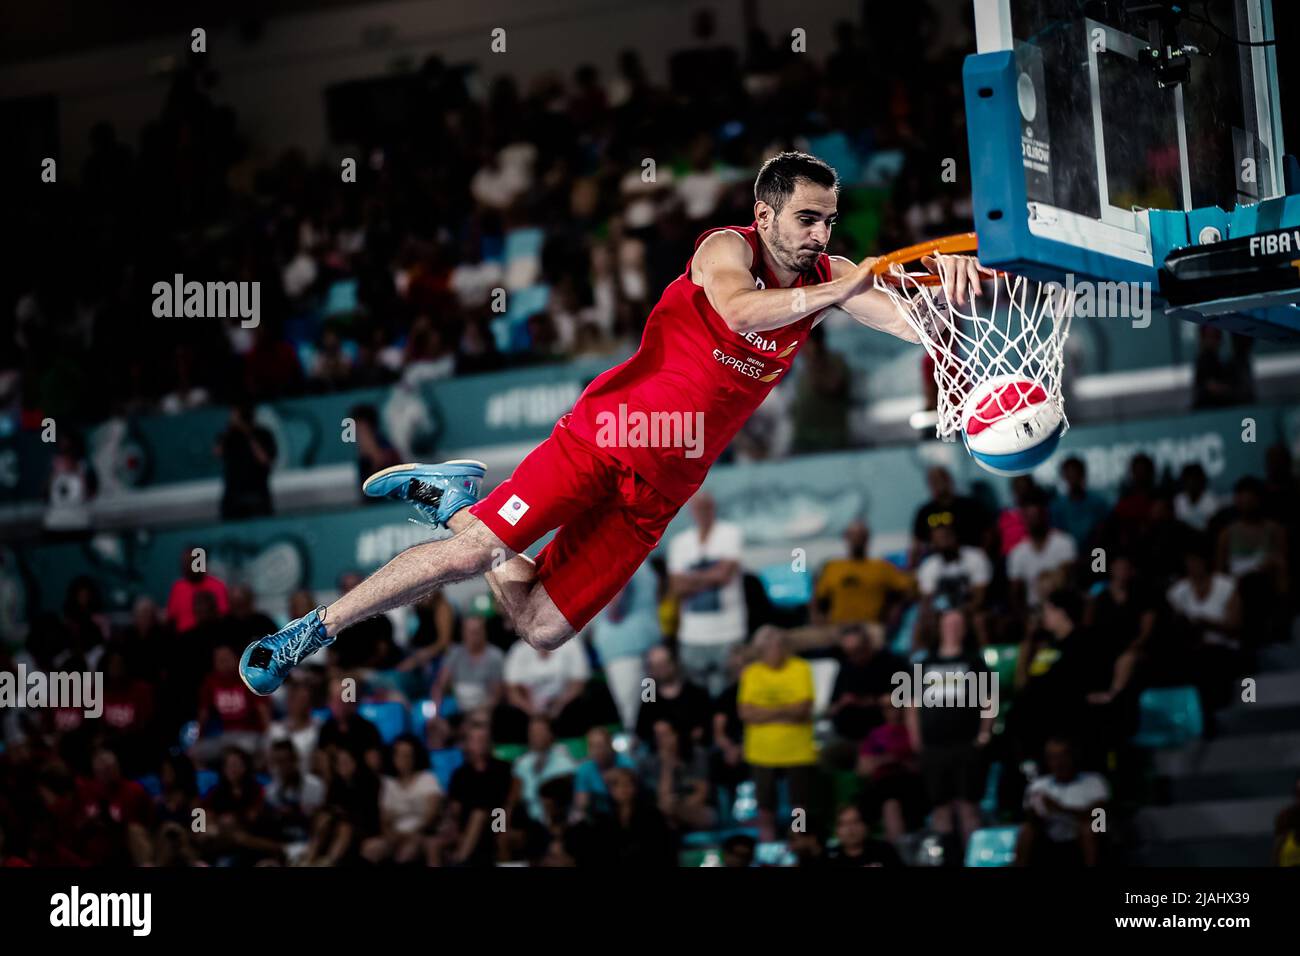 Ténérife, Espagne, 23 septembre 2018: Un joueur de basket-ball qui fait un dunk slam lors d'un spectacle acrobatique de basket-ball Banque D'Images